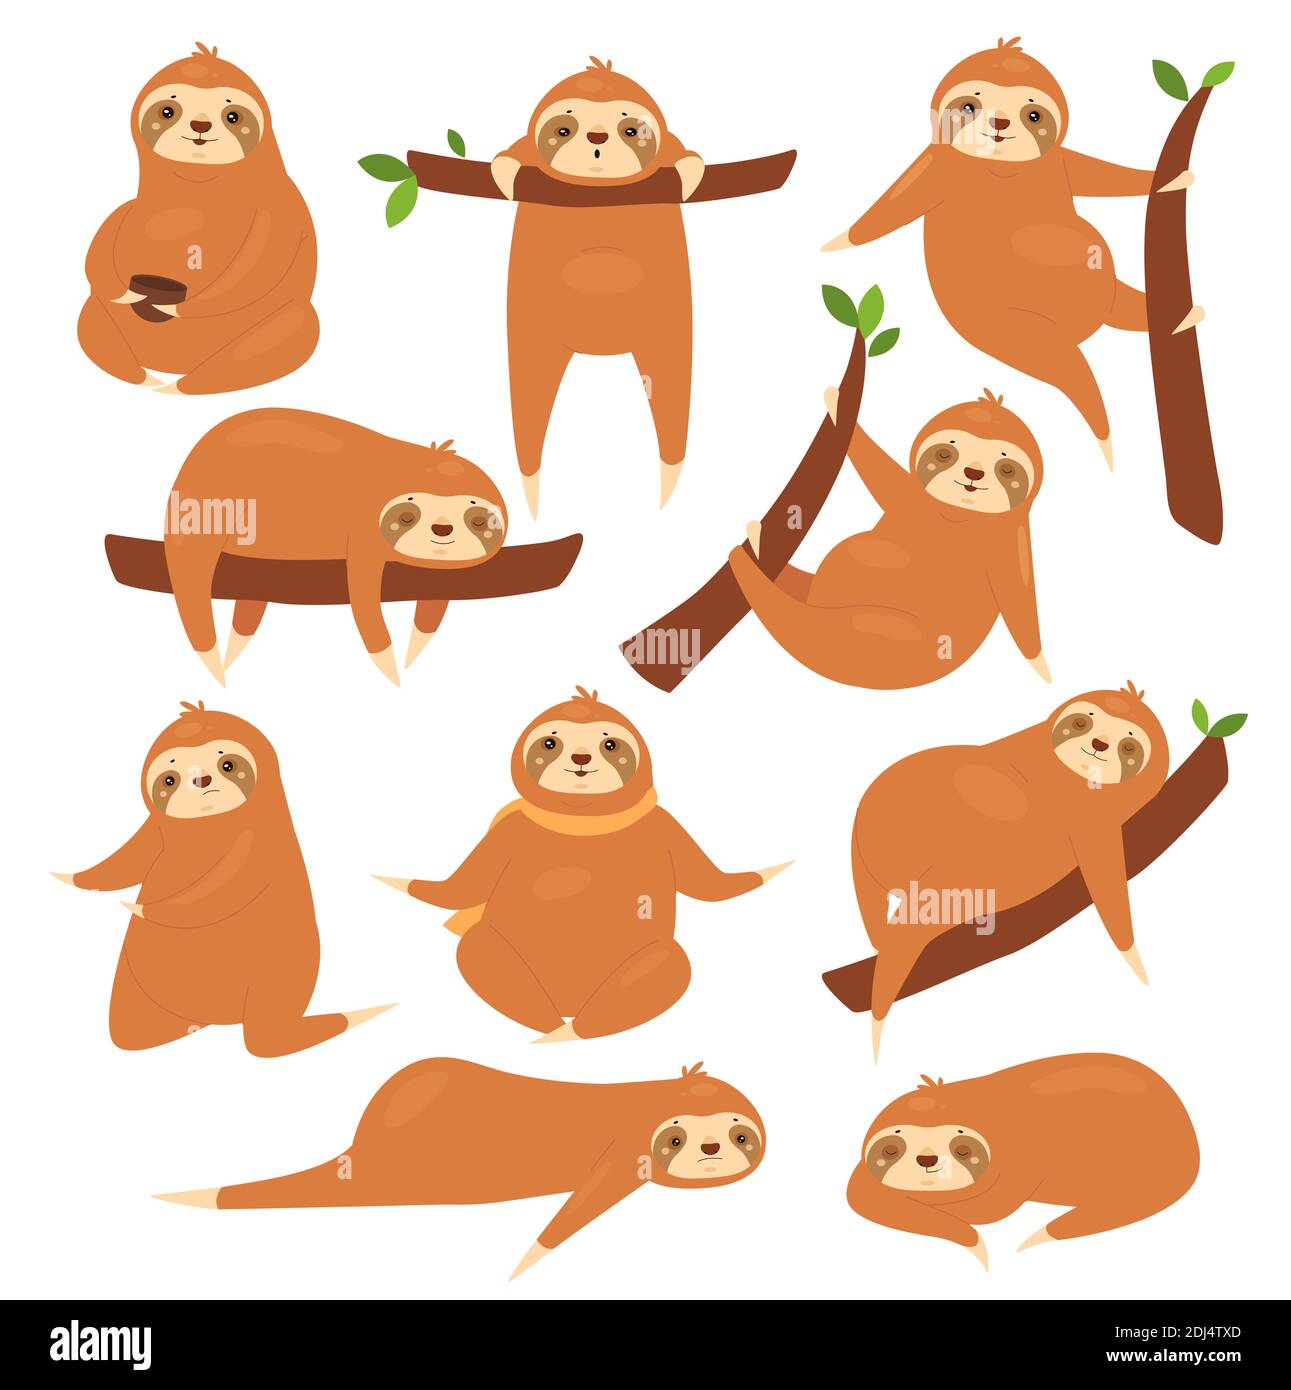 Sloths Vektor-Illustrationsset. Cartoon niedlich faul verschiedene Posen von Faultieren Charaktere Sammlung, lustige braune Tier schlafen auf tropischen Baum Zweig im Dschungel, hängen und schlafen isoliert auf weiß Stock Vektor